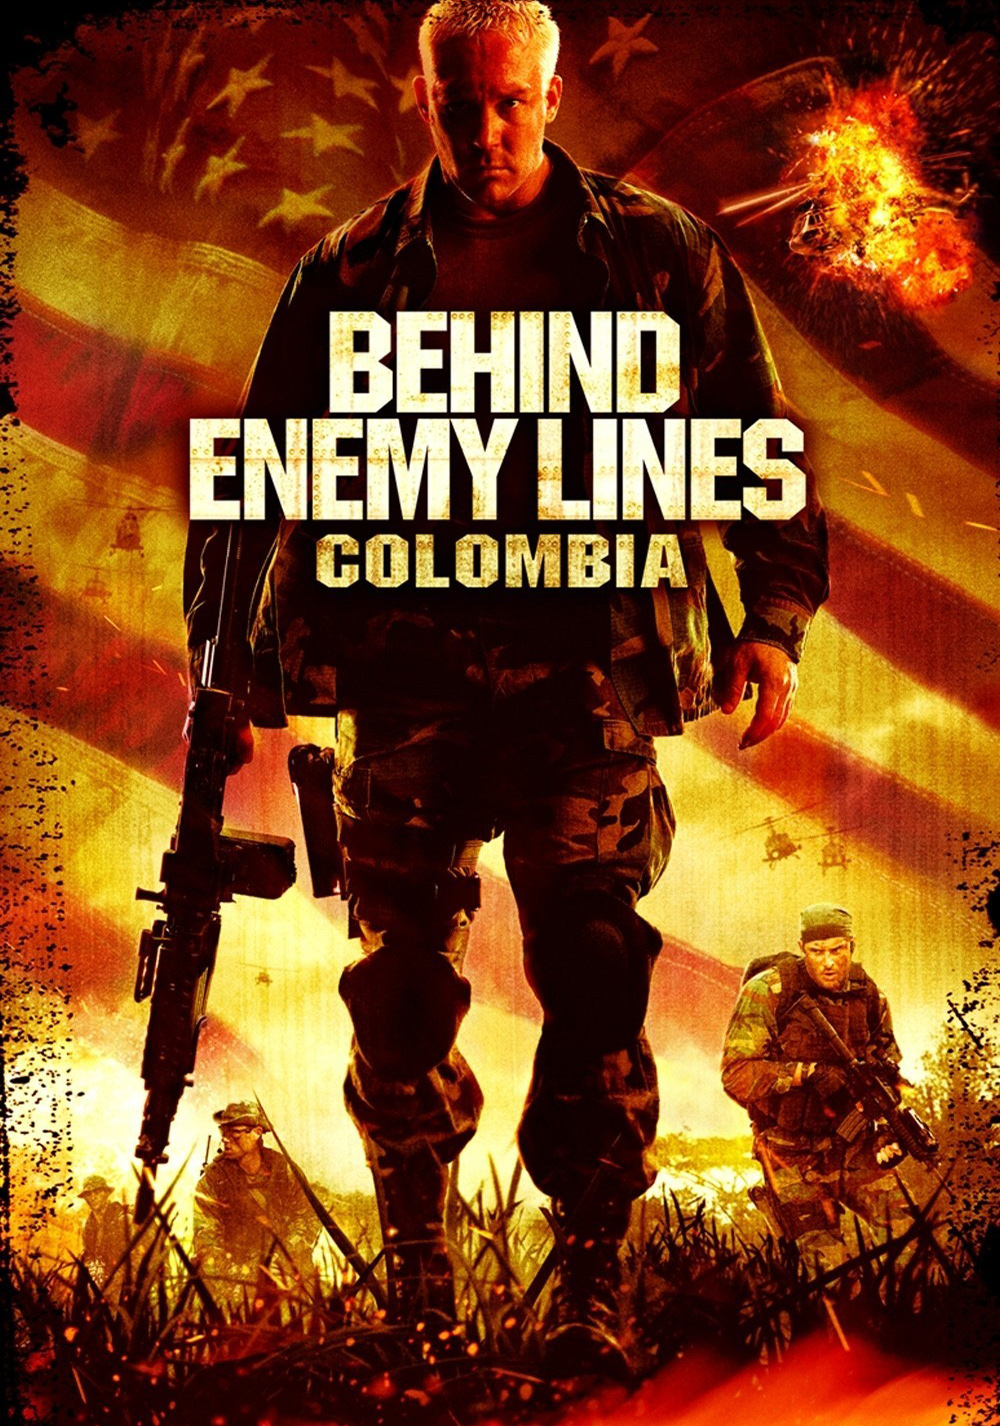 ดูหนังออนไลน์ฟรี Behind Enemy Lines II Axis of Evil (2006) บีไฮด์ เอนิมี ไลนส์ 2 ฝ่าตายปฏิบัติการท้านรก หนังเต็มเรื่อง หนังมาสเตอร์ ดูหนังHD ดูหนังออนไลน์ ดูหนังใหม่